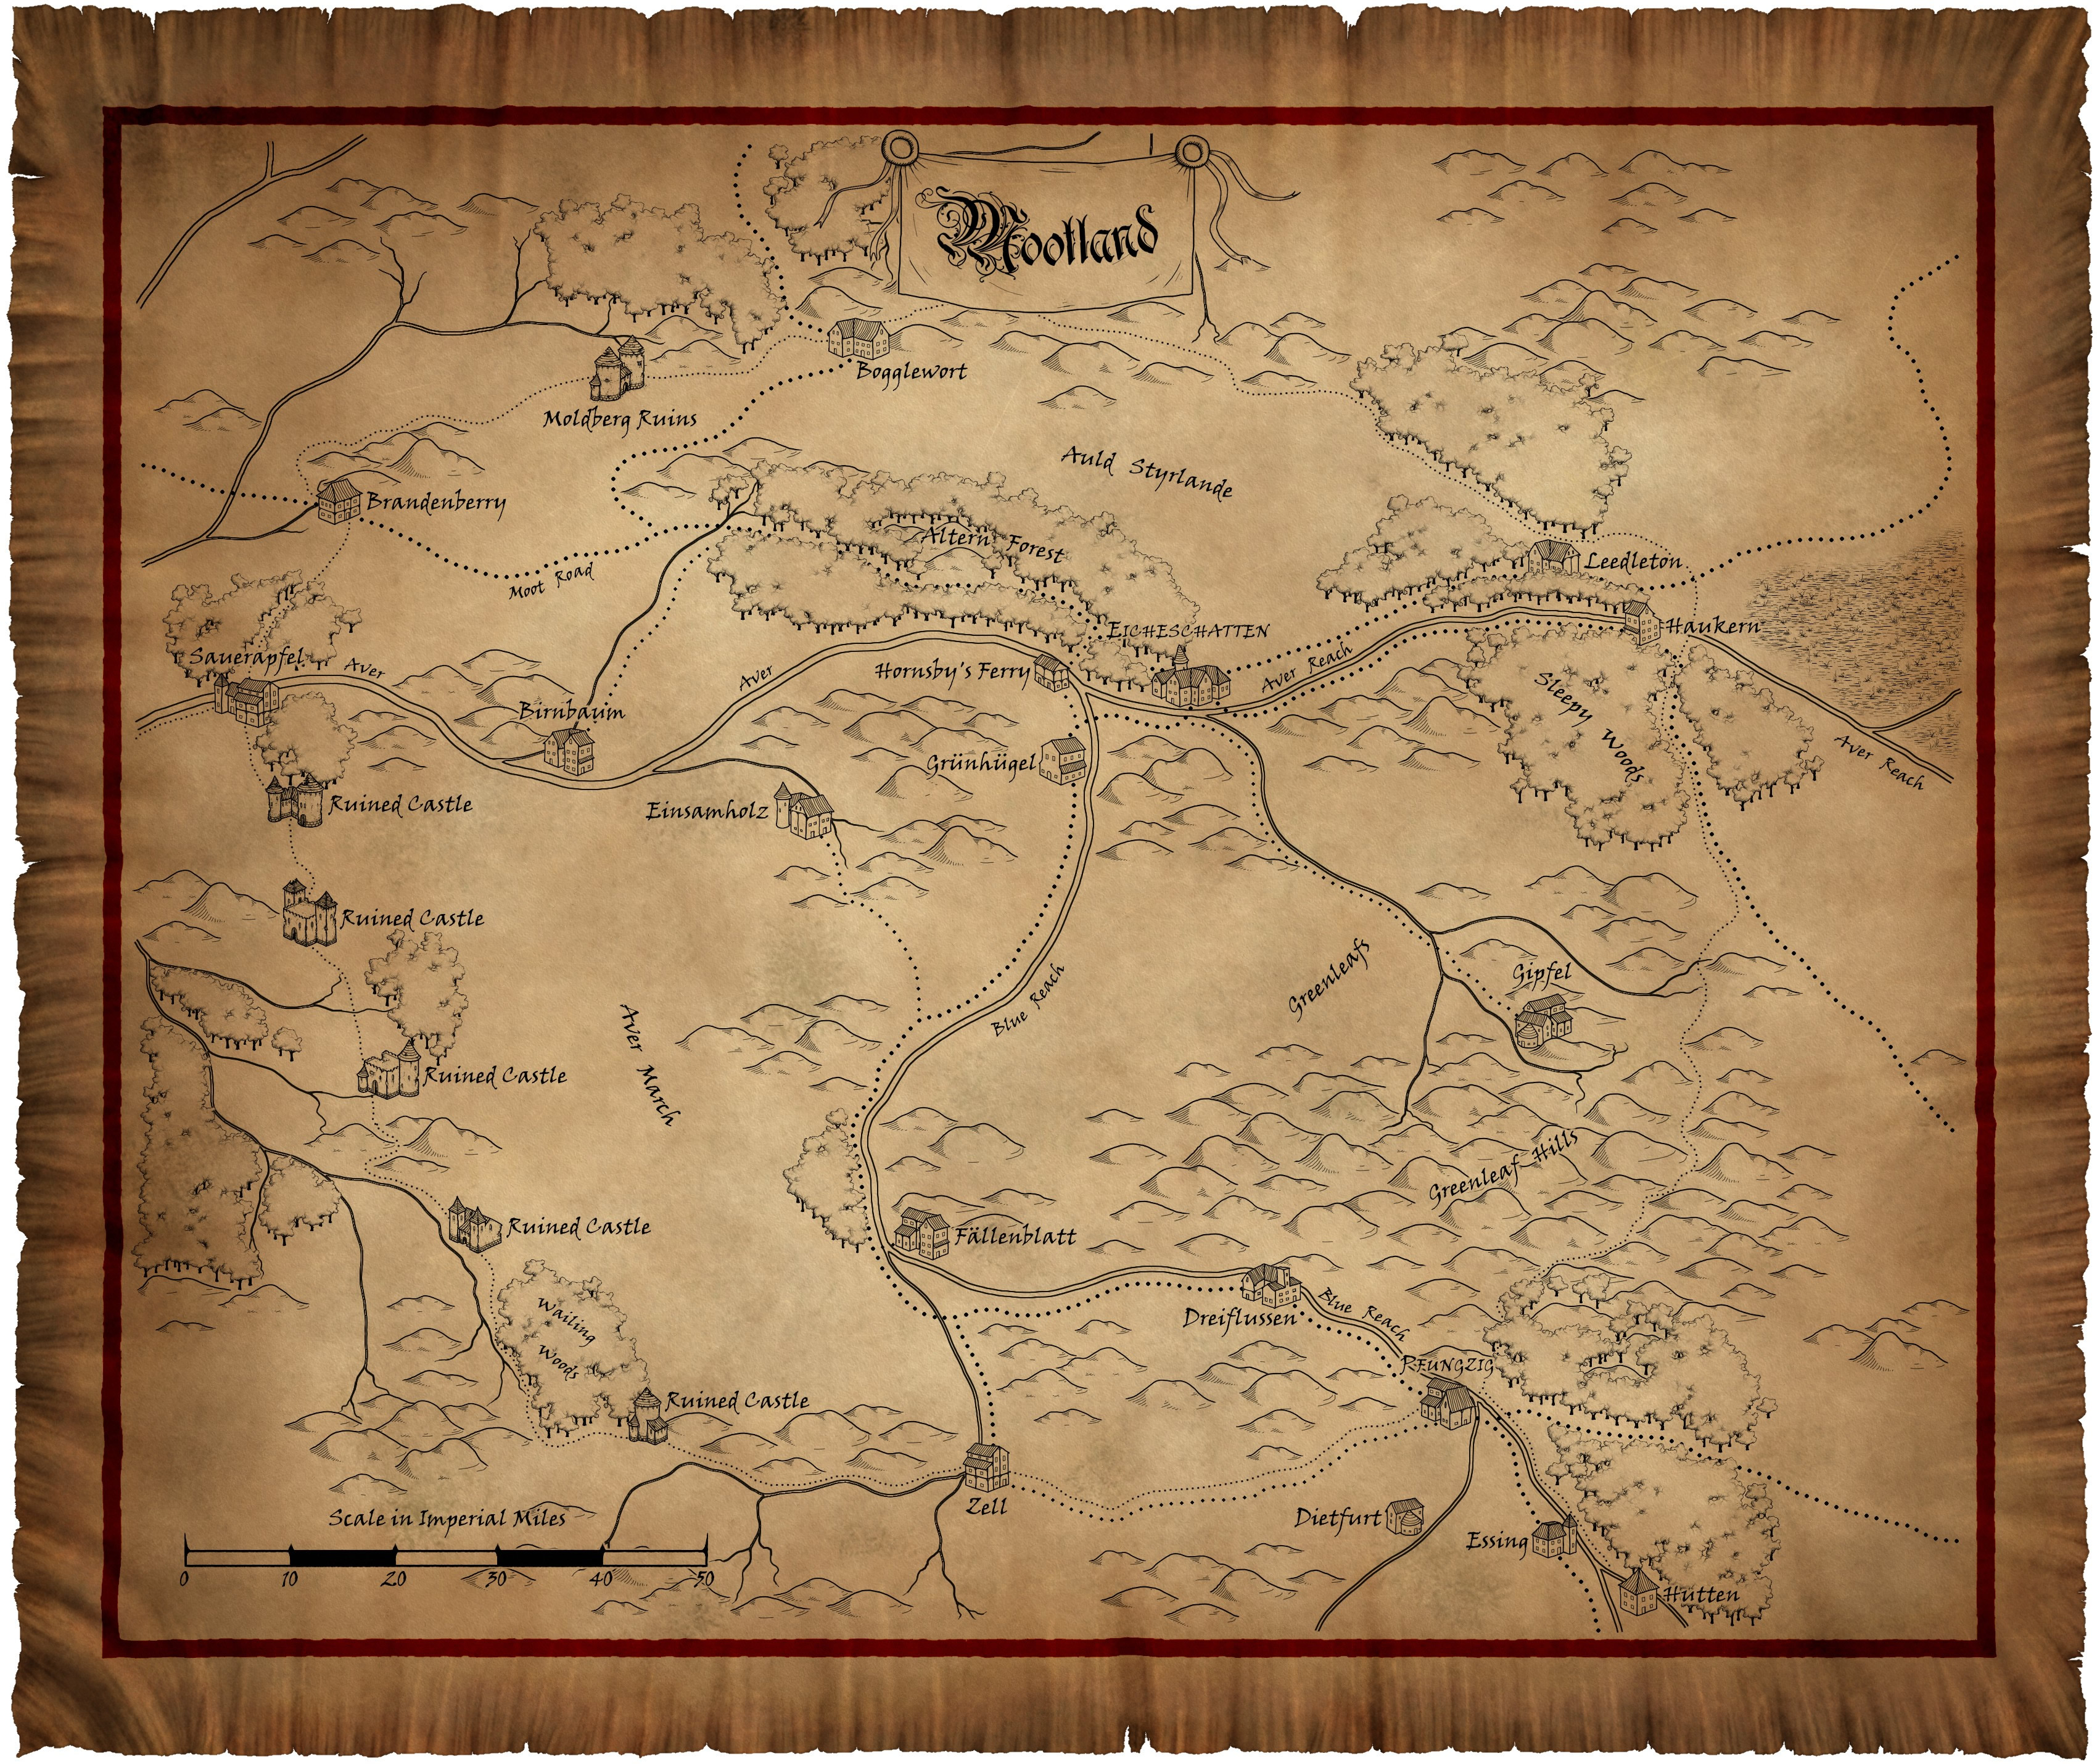 Warhammer, maps, role play - desktop wallpaper